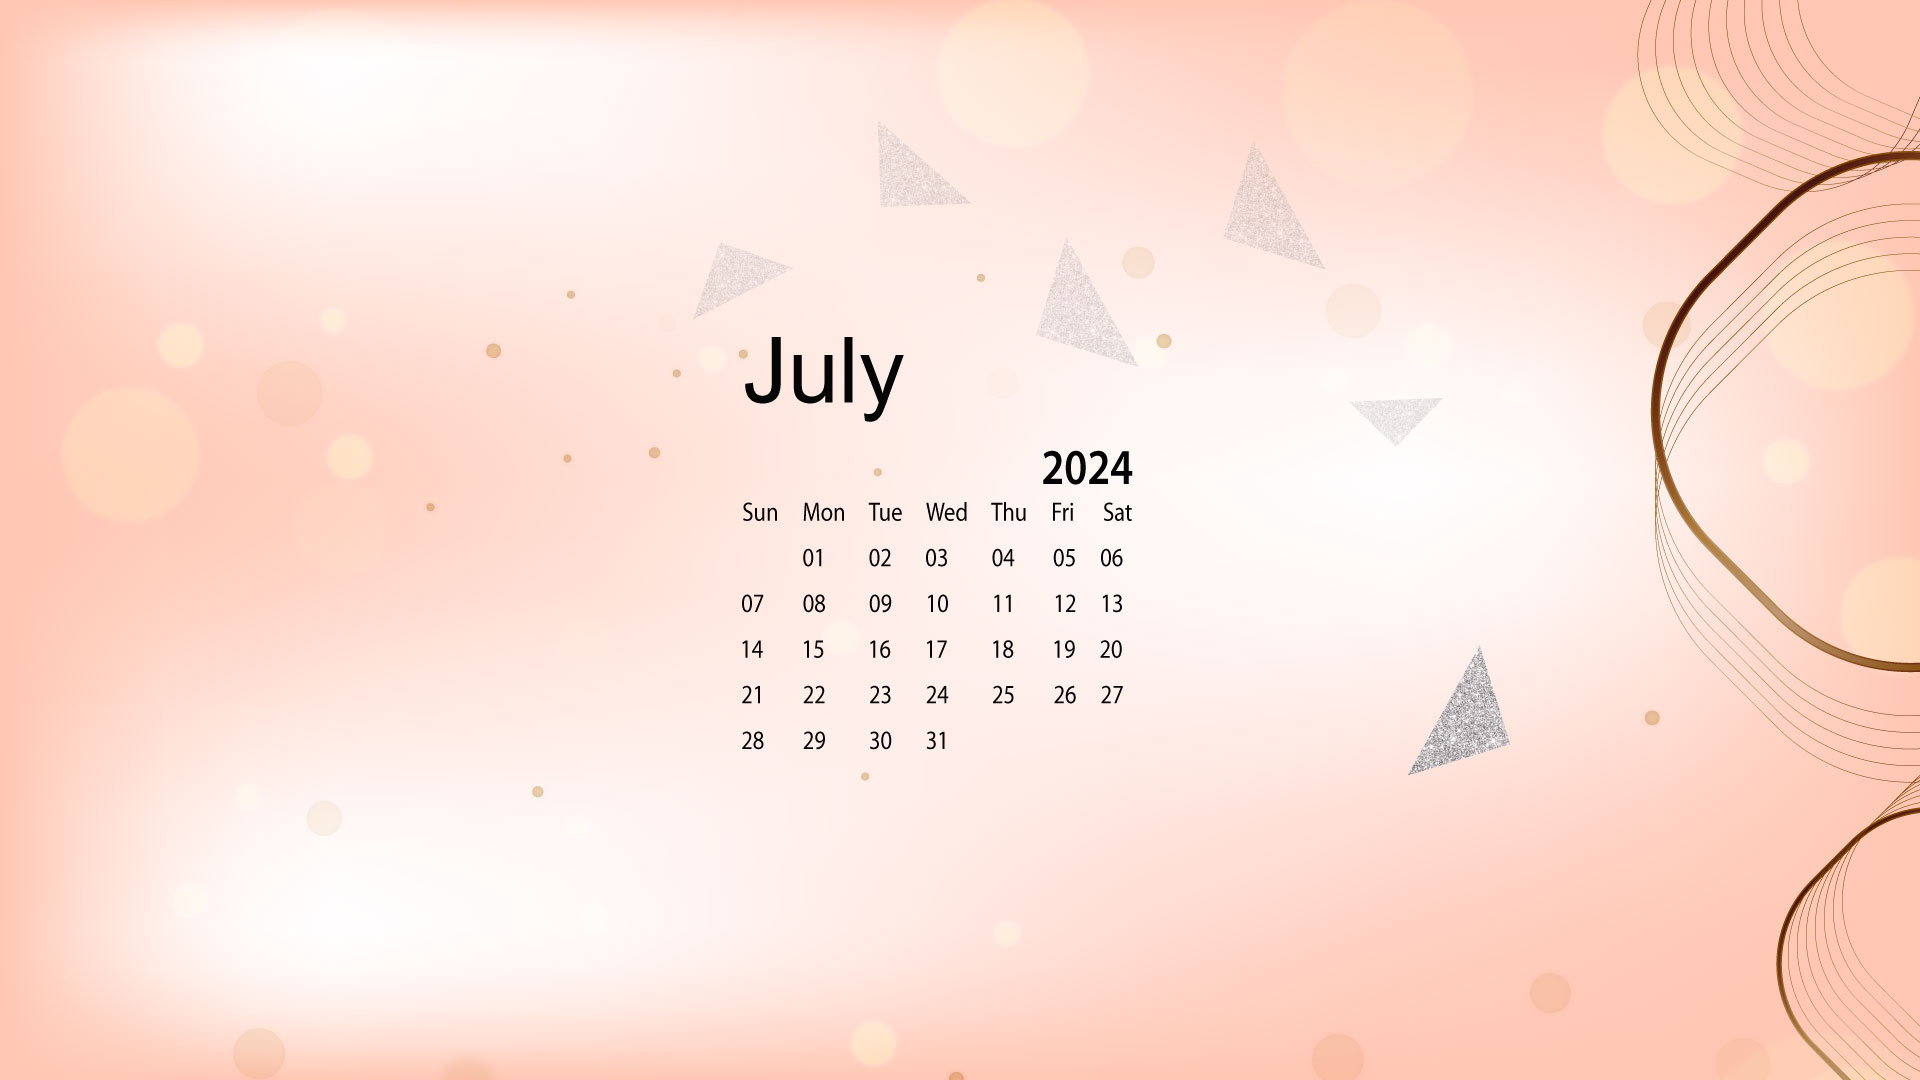 July 2024 Desktop Wallpaper Calendar - Calendarlabs with regard to July Calendar 2024 Wallpaper